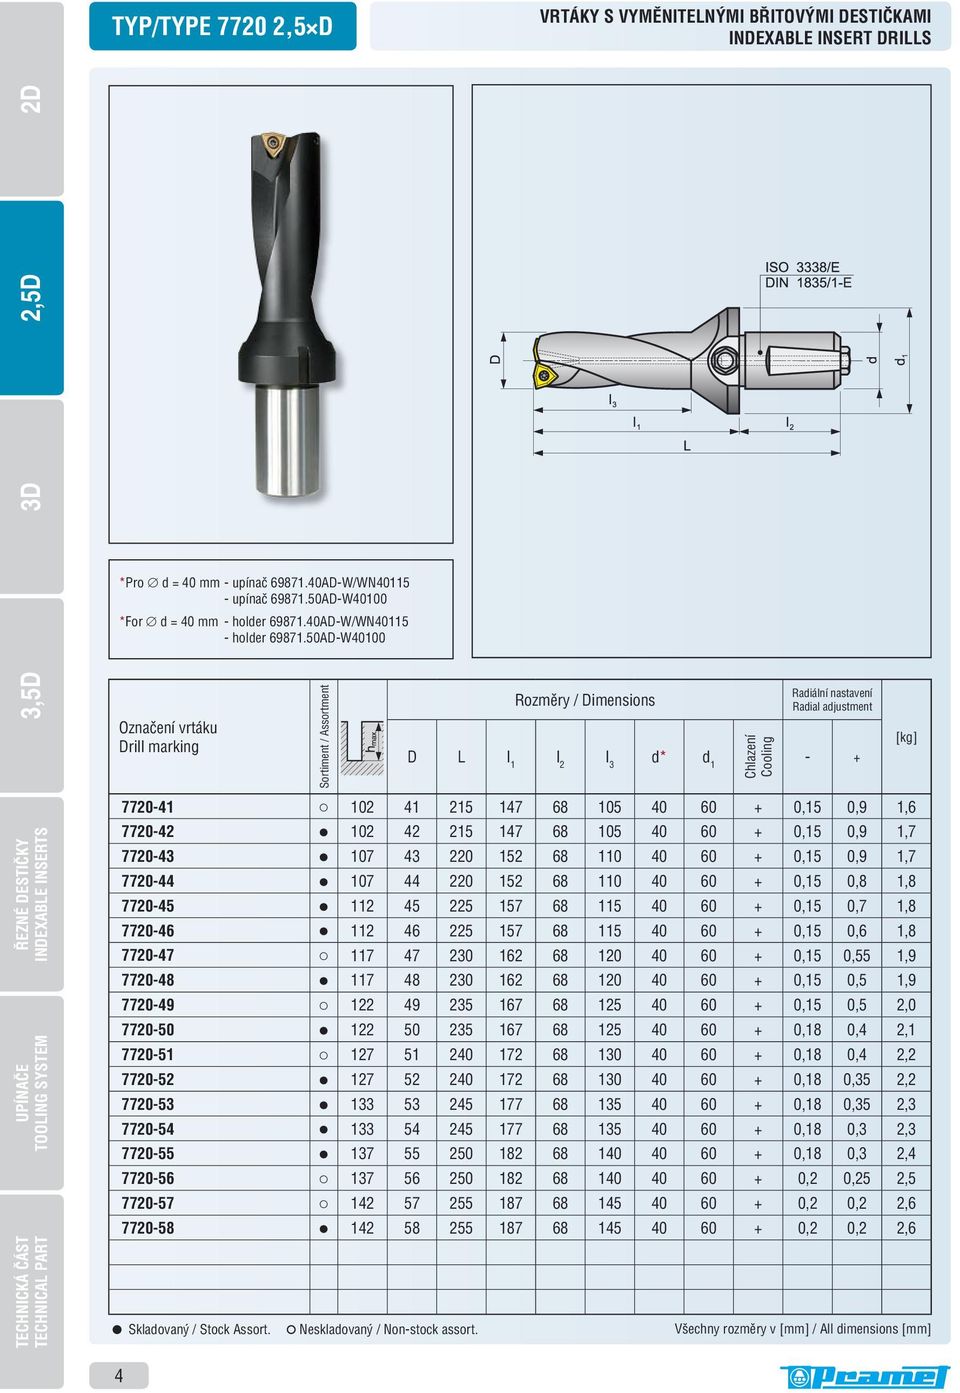 50AD-W40100 Označení vrtáku Drill marking Sortiment / Assortment Rozměry / Dimensions D L l 1 l 2 l 3 d* d 1 Chlazení Cooling Radiální nastavení Radial adjustment - + [kg] INDEXABLE INSERTS TOOLING